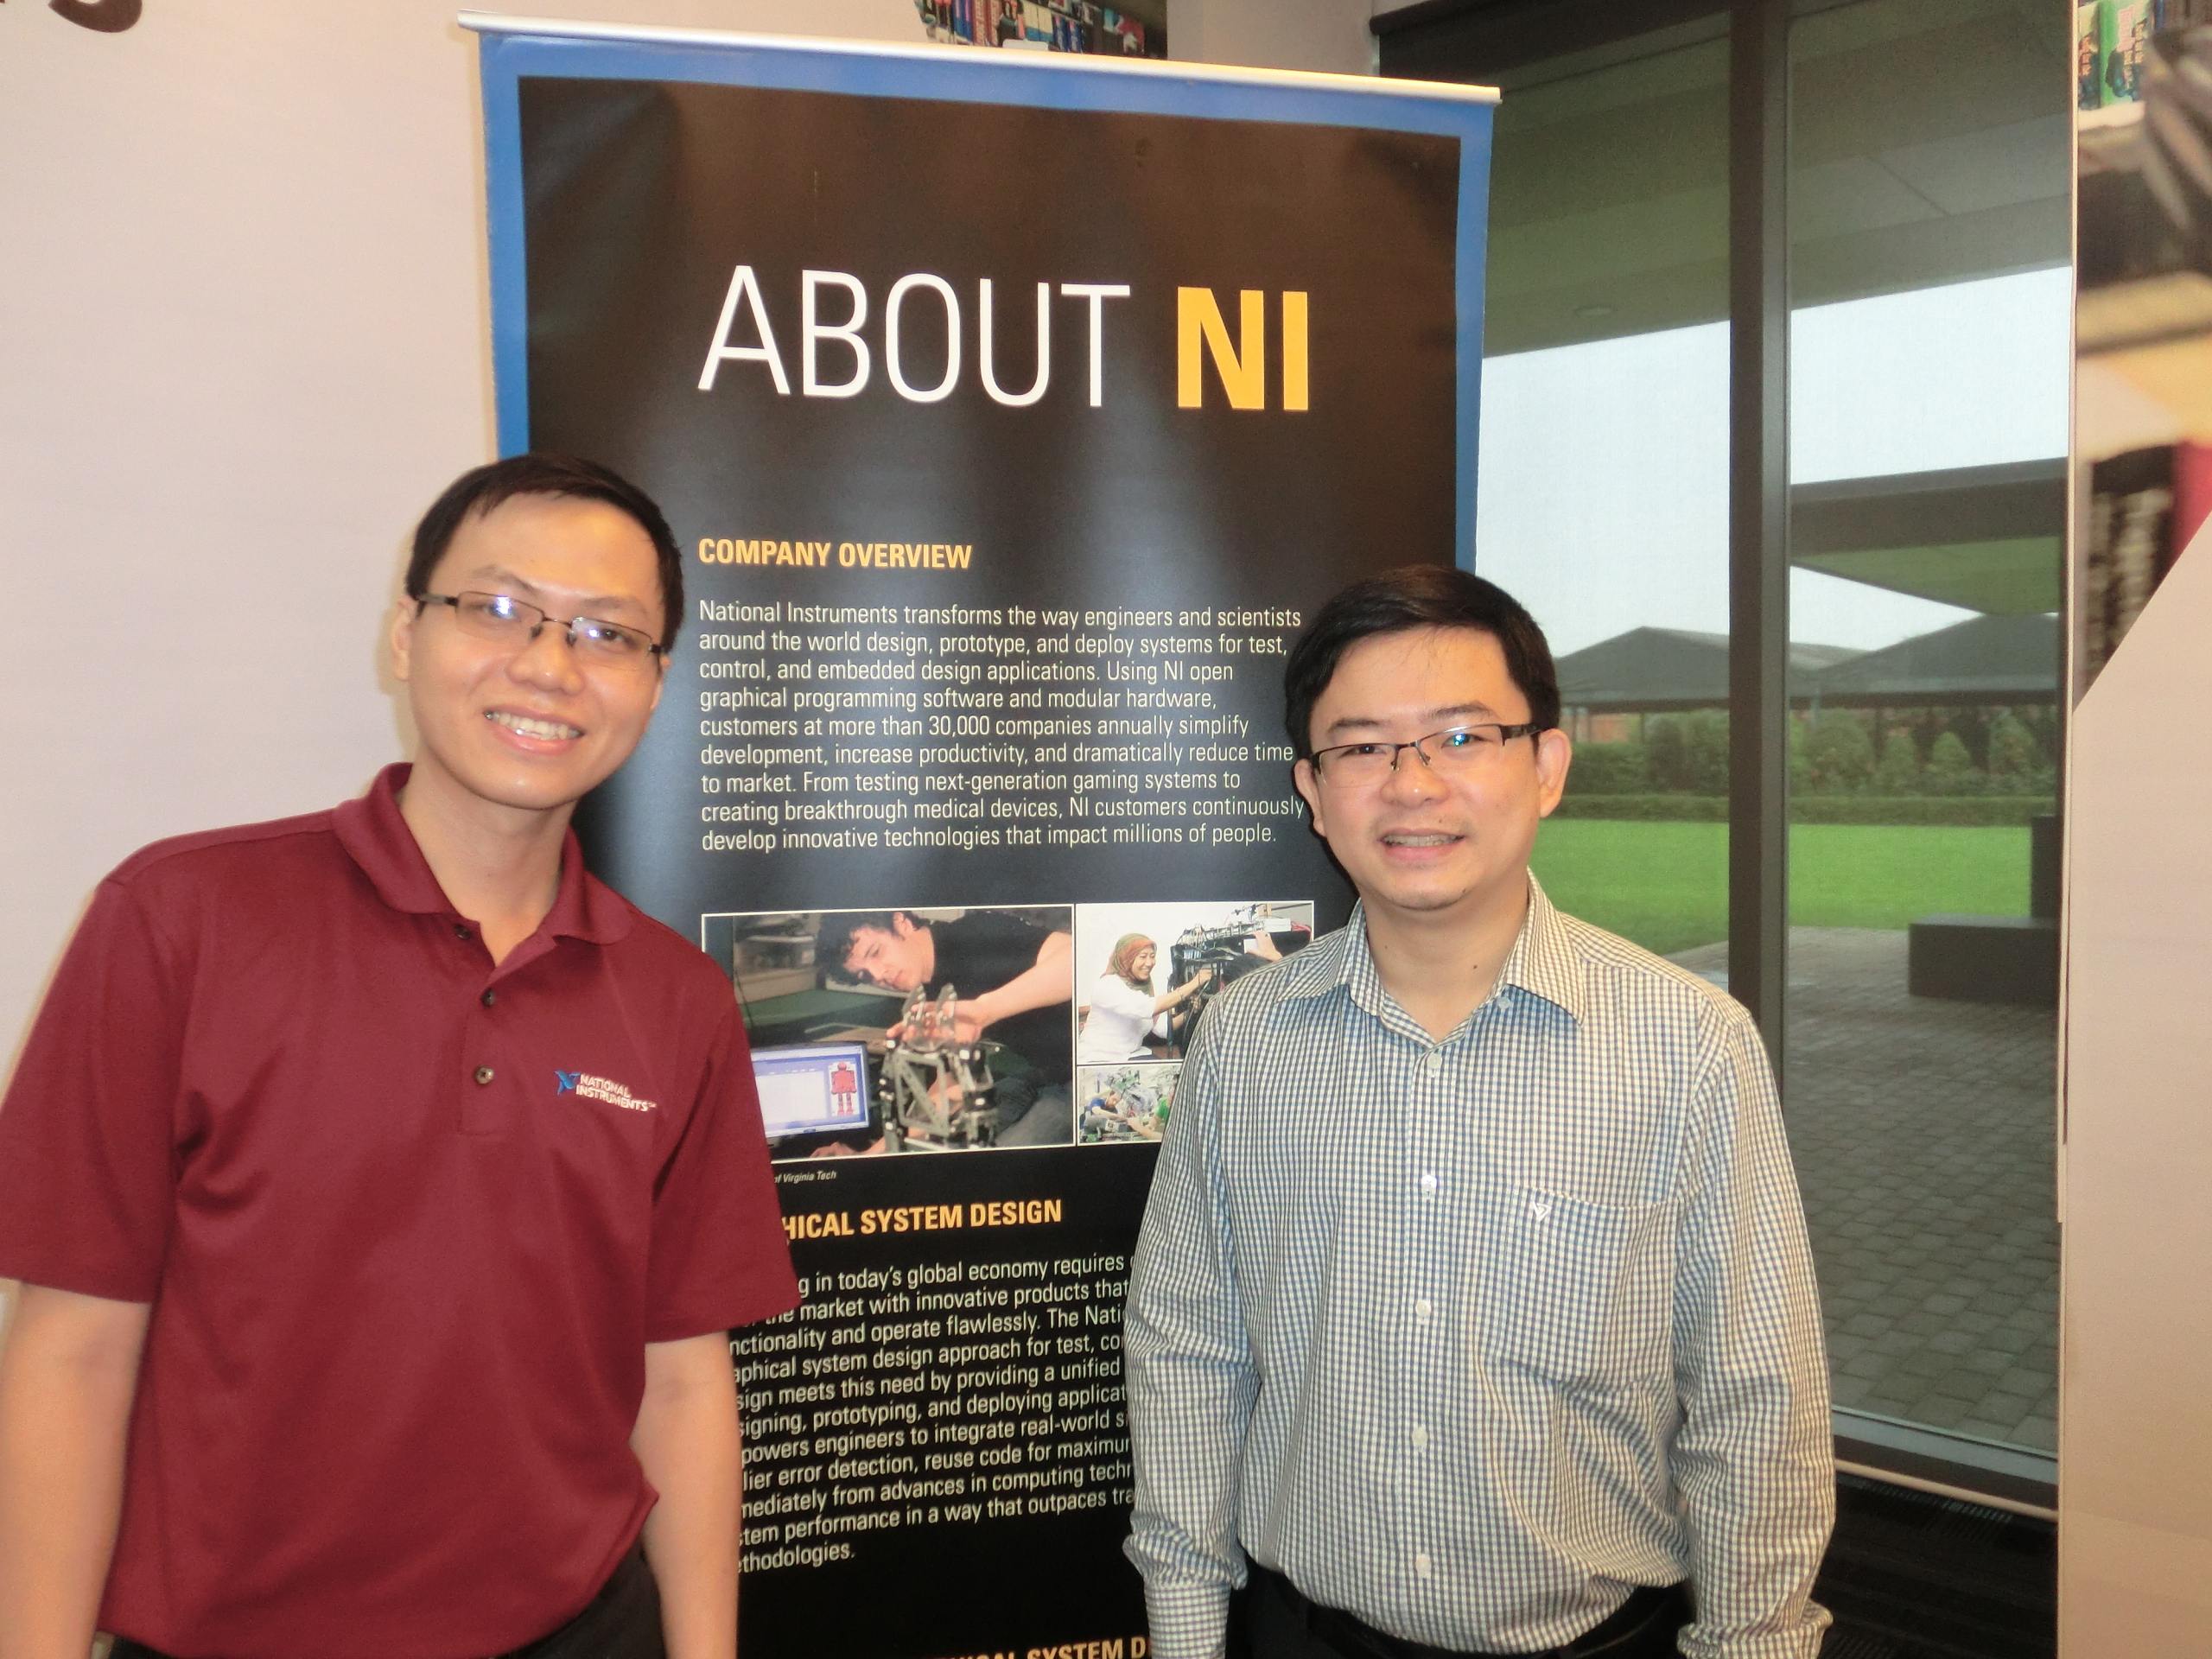 Ông Phạm Quốc Hùng (phải) và cựu sinh viên RMIT Việt Nam Nguyễn Trọng Nhân tại quầy giới thiệu về National Instruments.